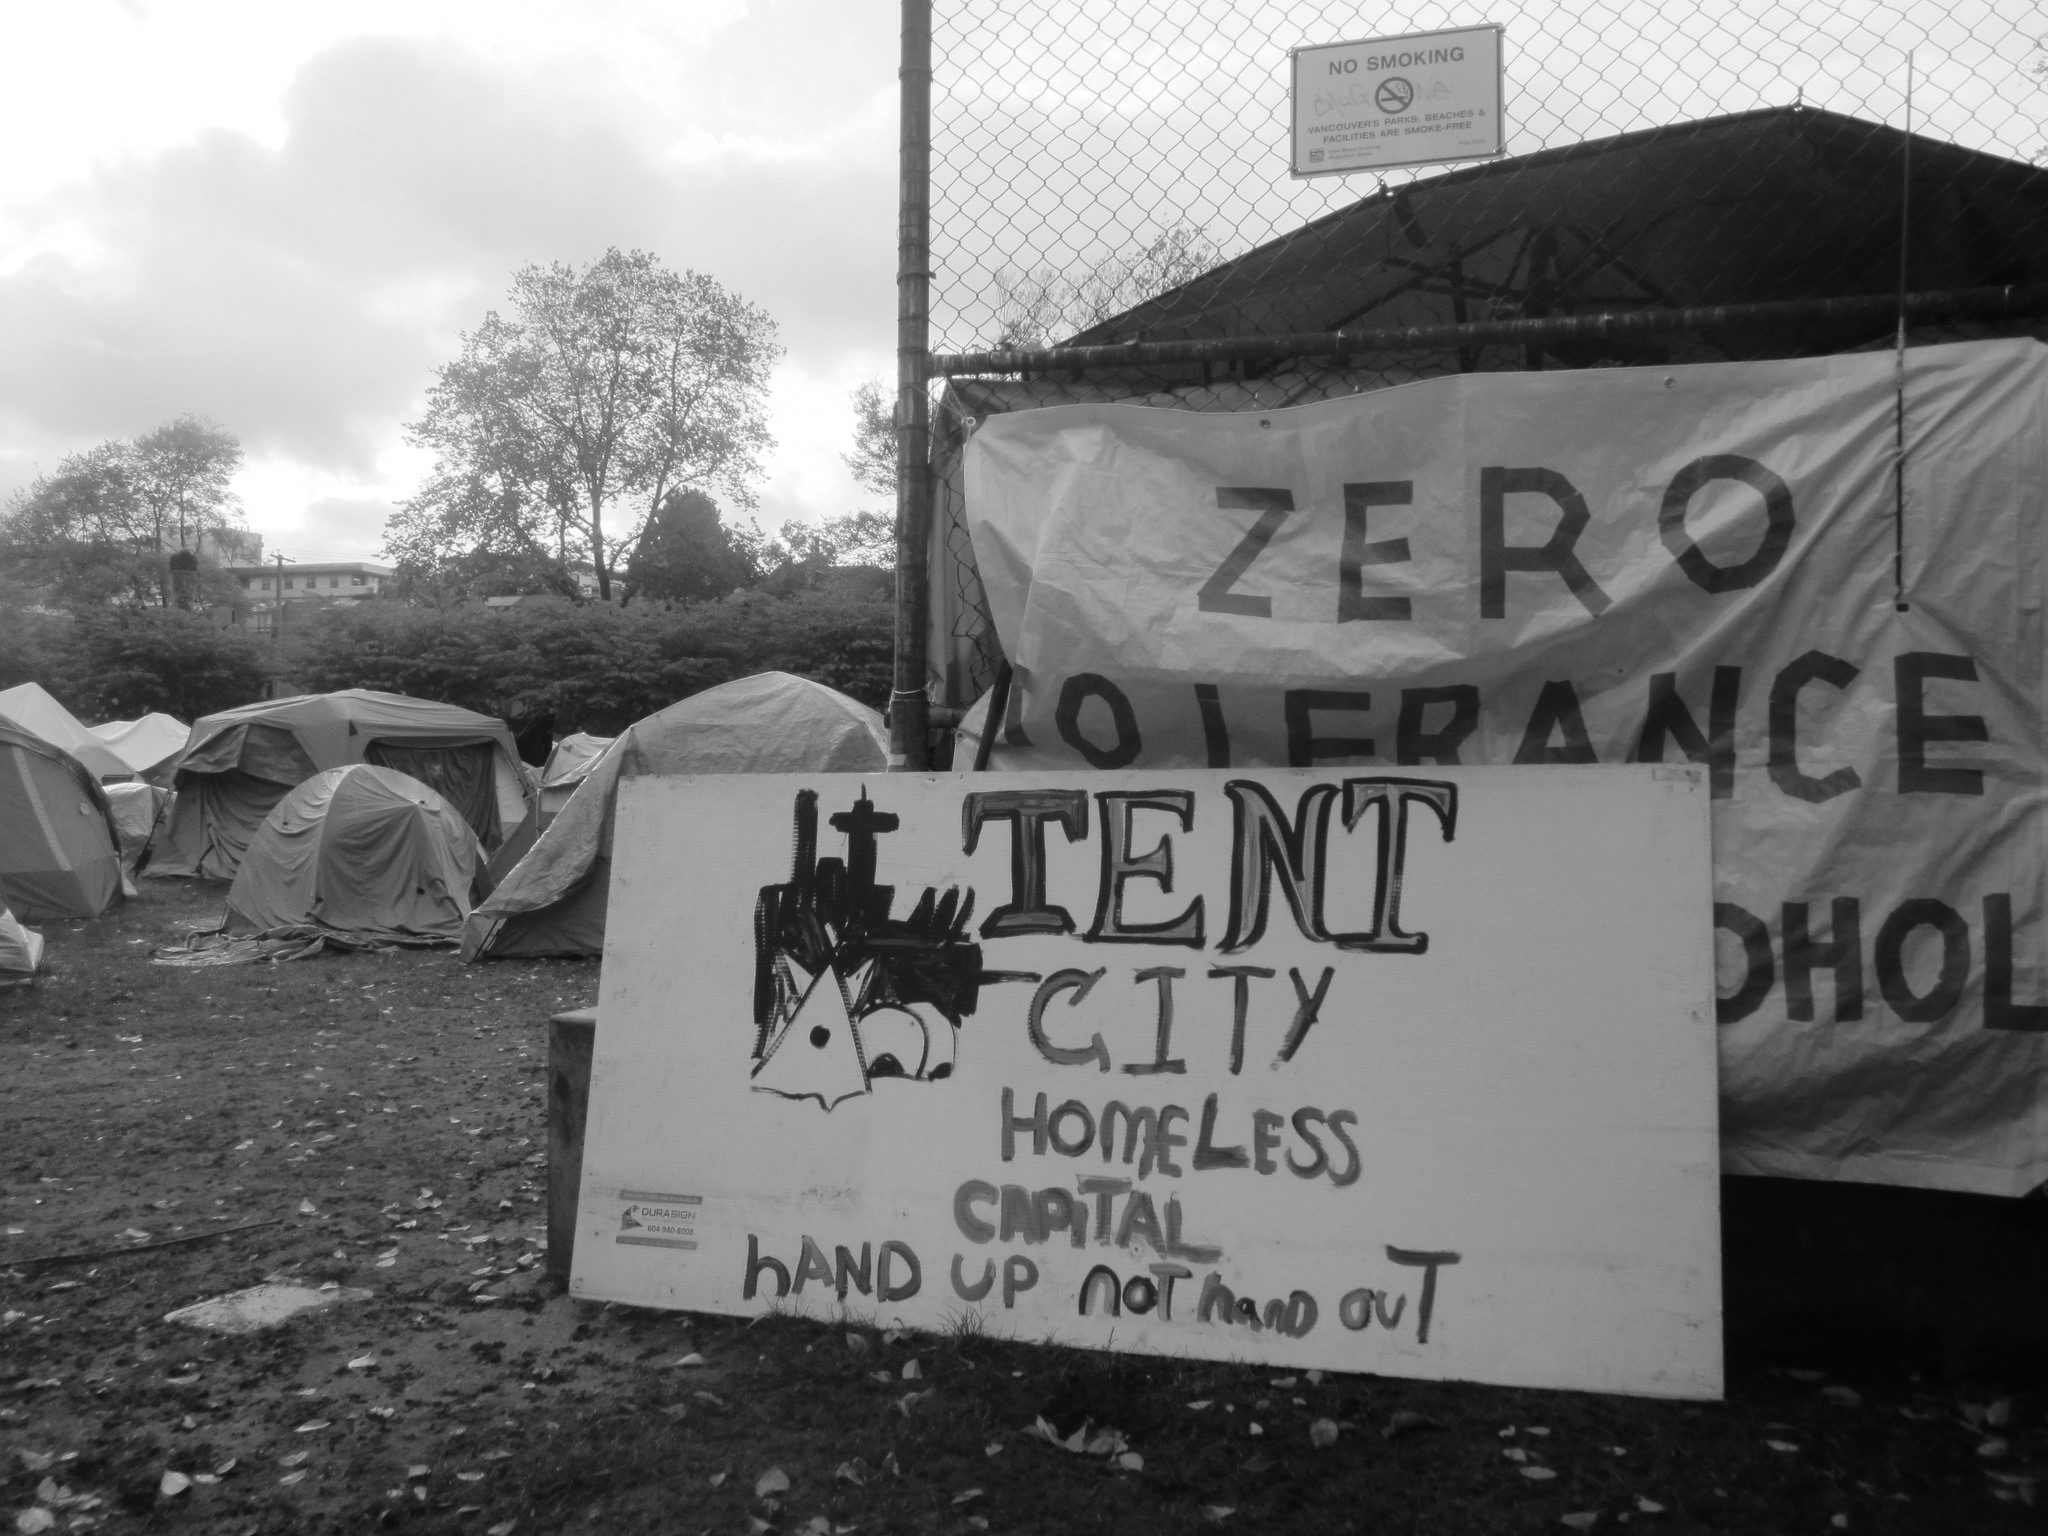 شهر چادرها در ویکتوریا و ونکوور: از برپایی تا فروپاشی، یا چهره فقر در بریتیش کلمبیا